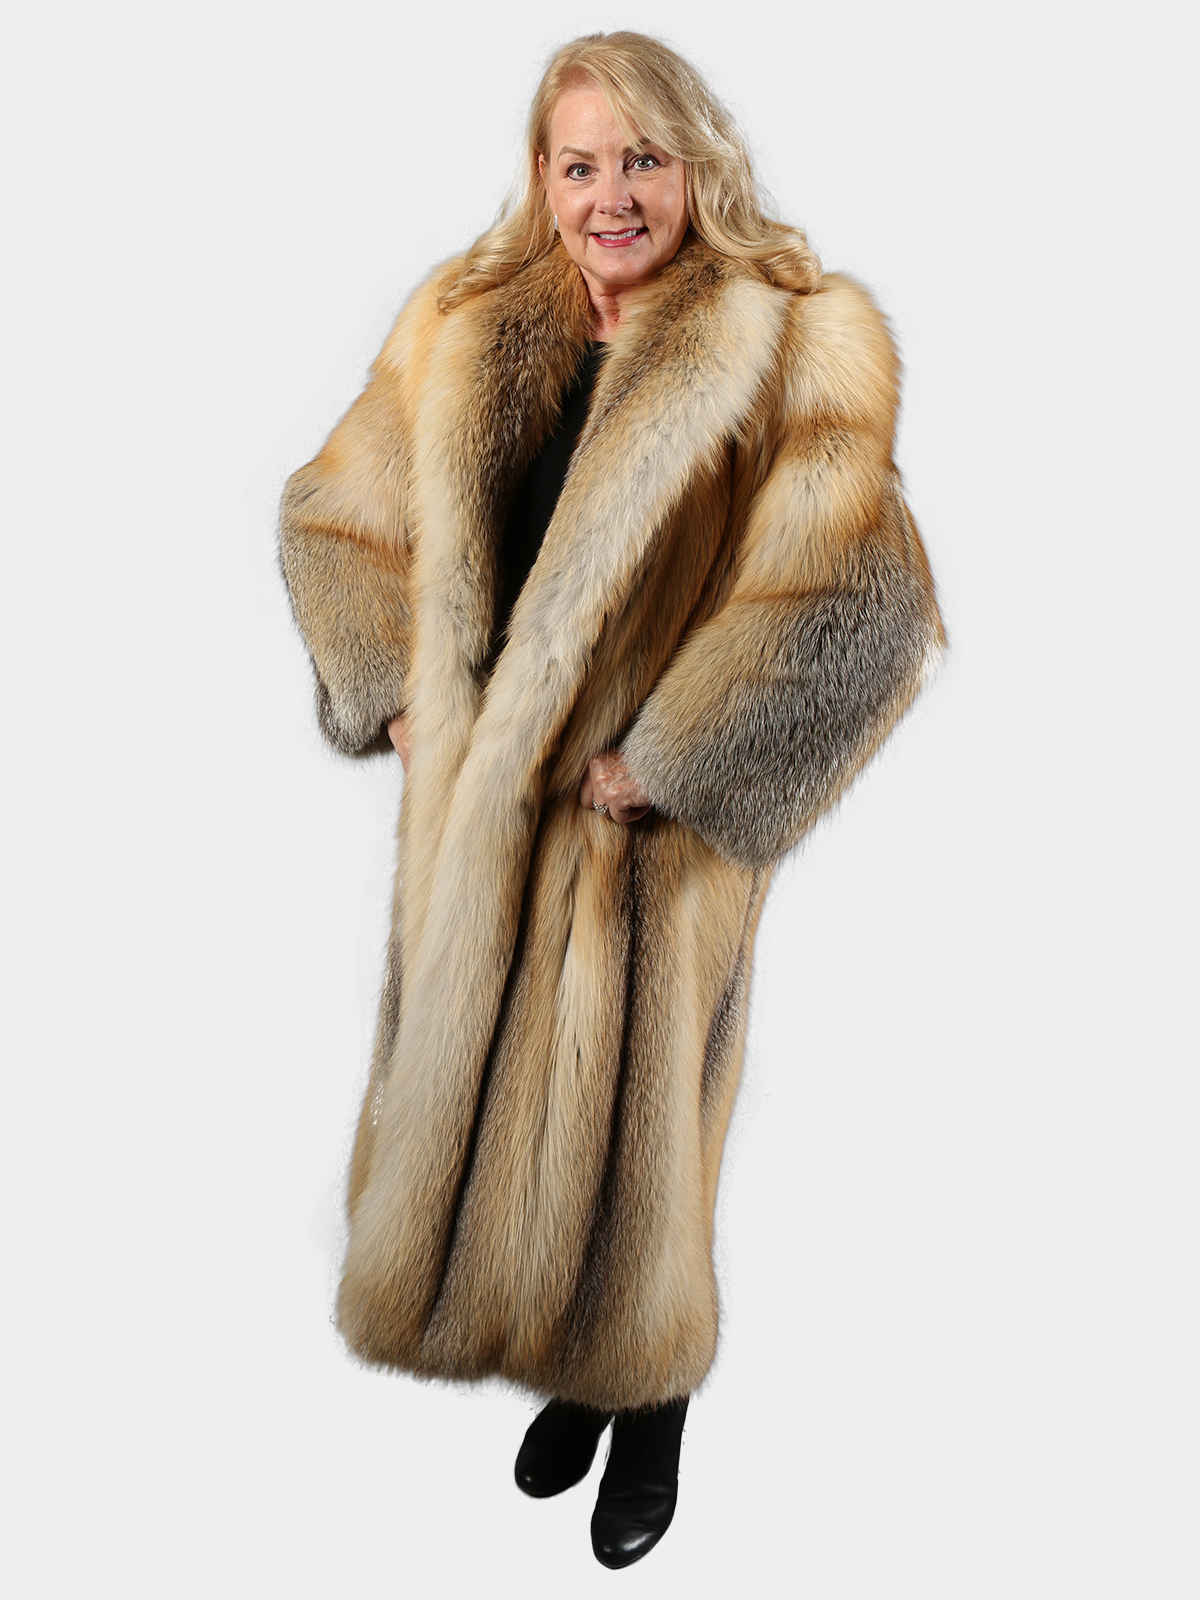 Woman's Natural Red Fur Coat - Estate Furs